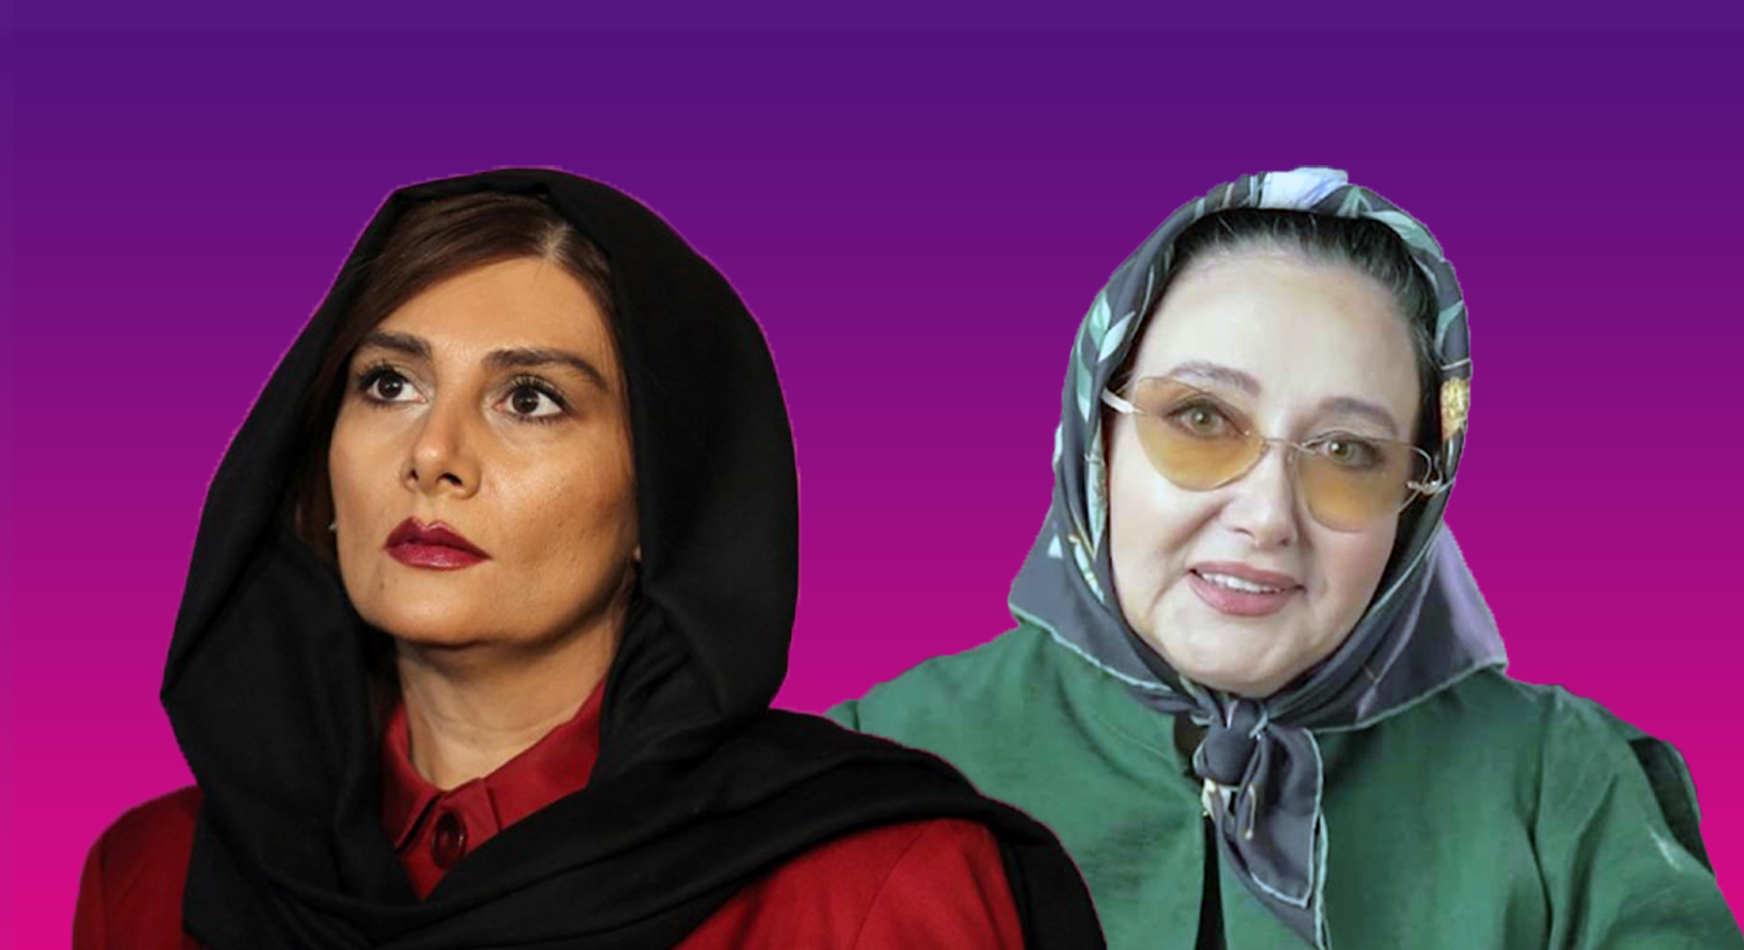 قمع السلطات الإيرانية مستمر.. اعتقال الممثلتين كتايون رياحي وهنغامة قاضياني